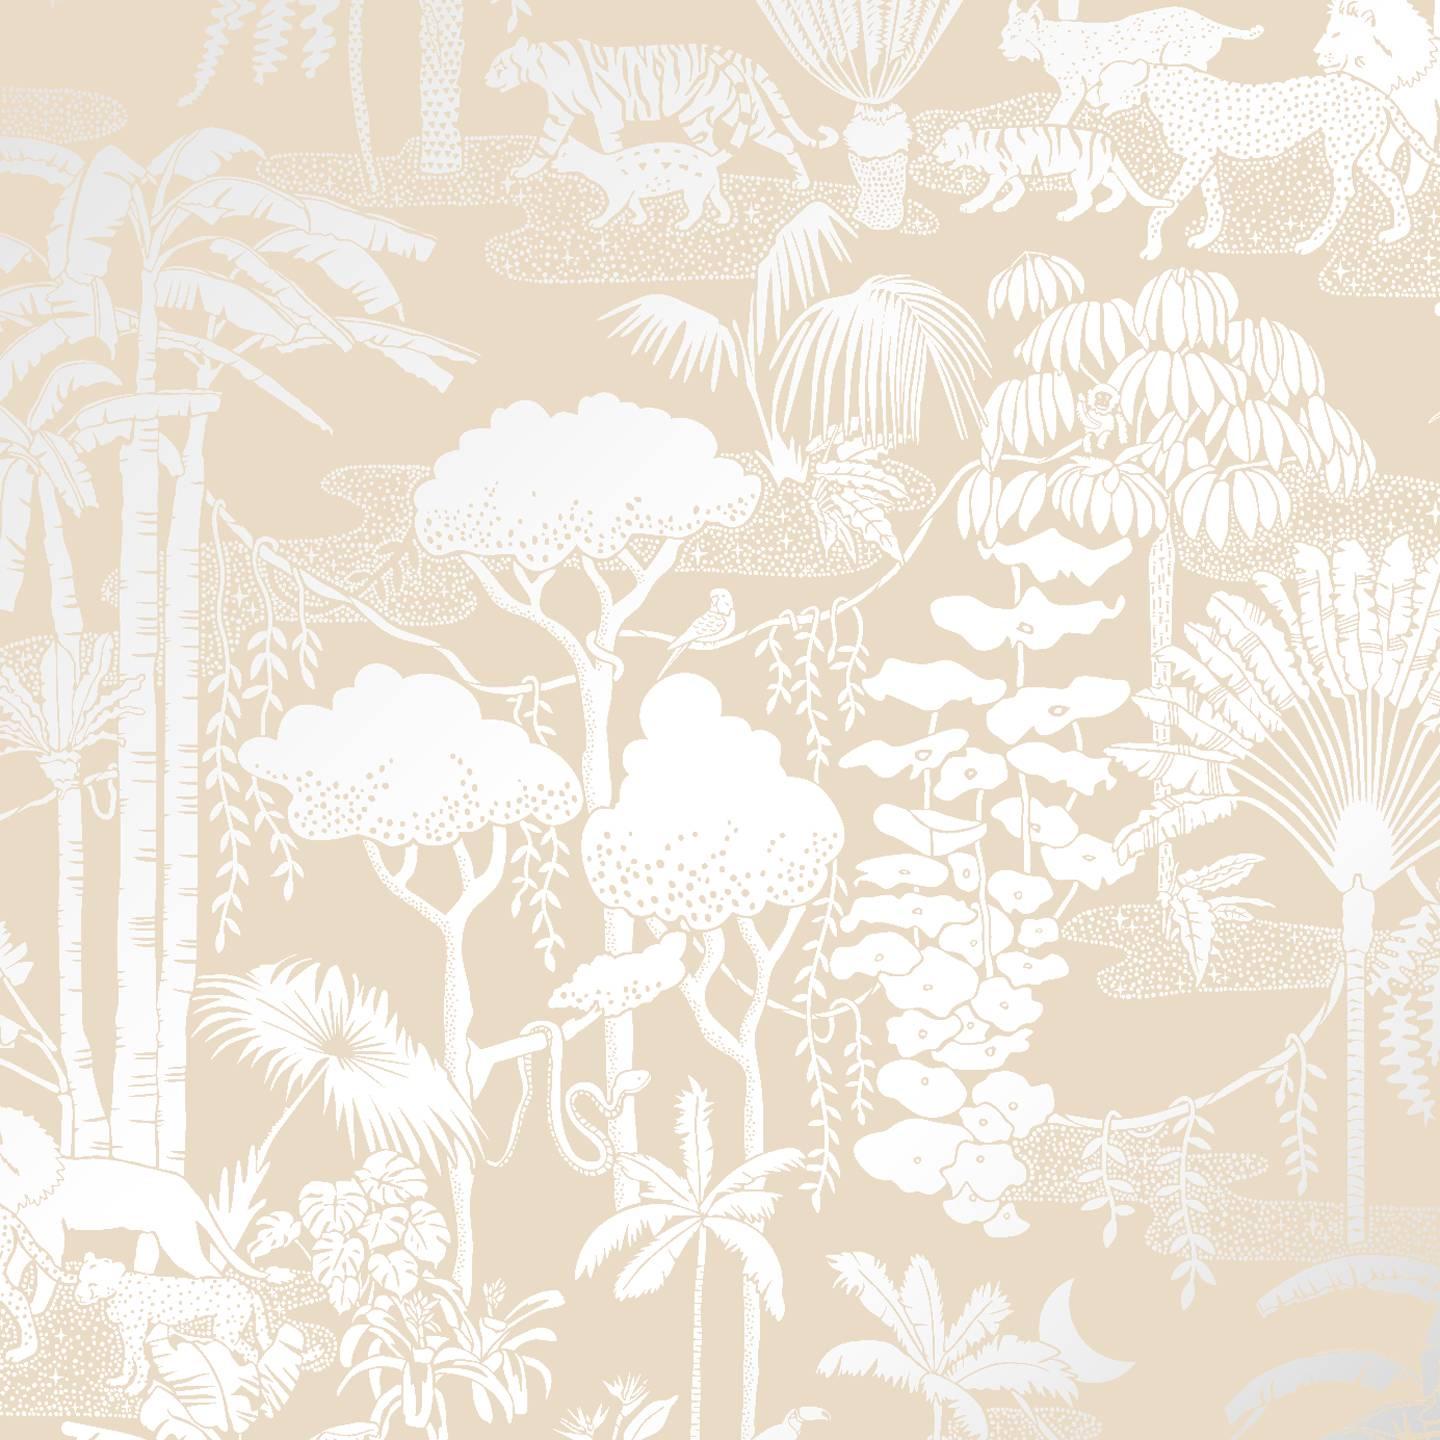 Jungle Dream Designer Siebdruck-Tapete in Stardust 'Silber auf hafermehlfarbenem Topf'